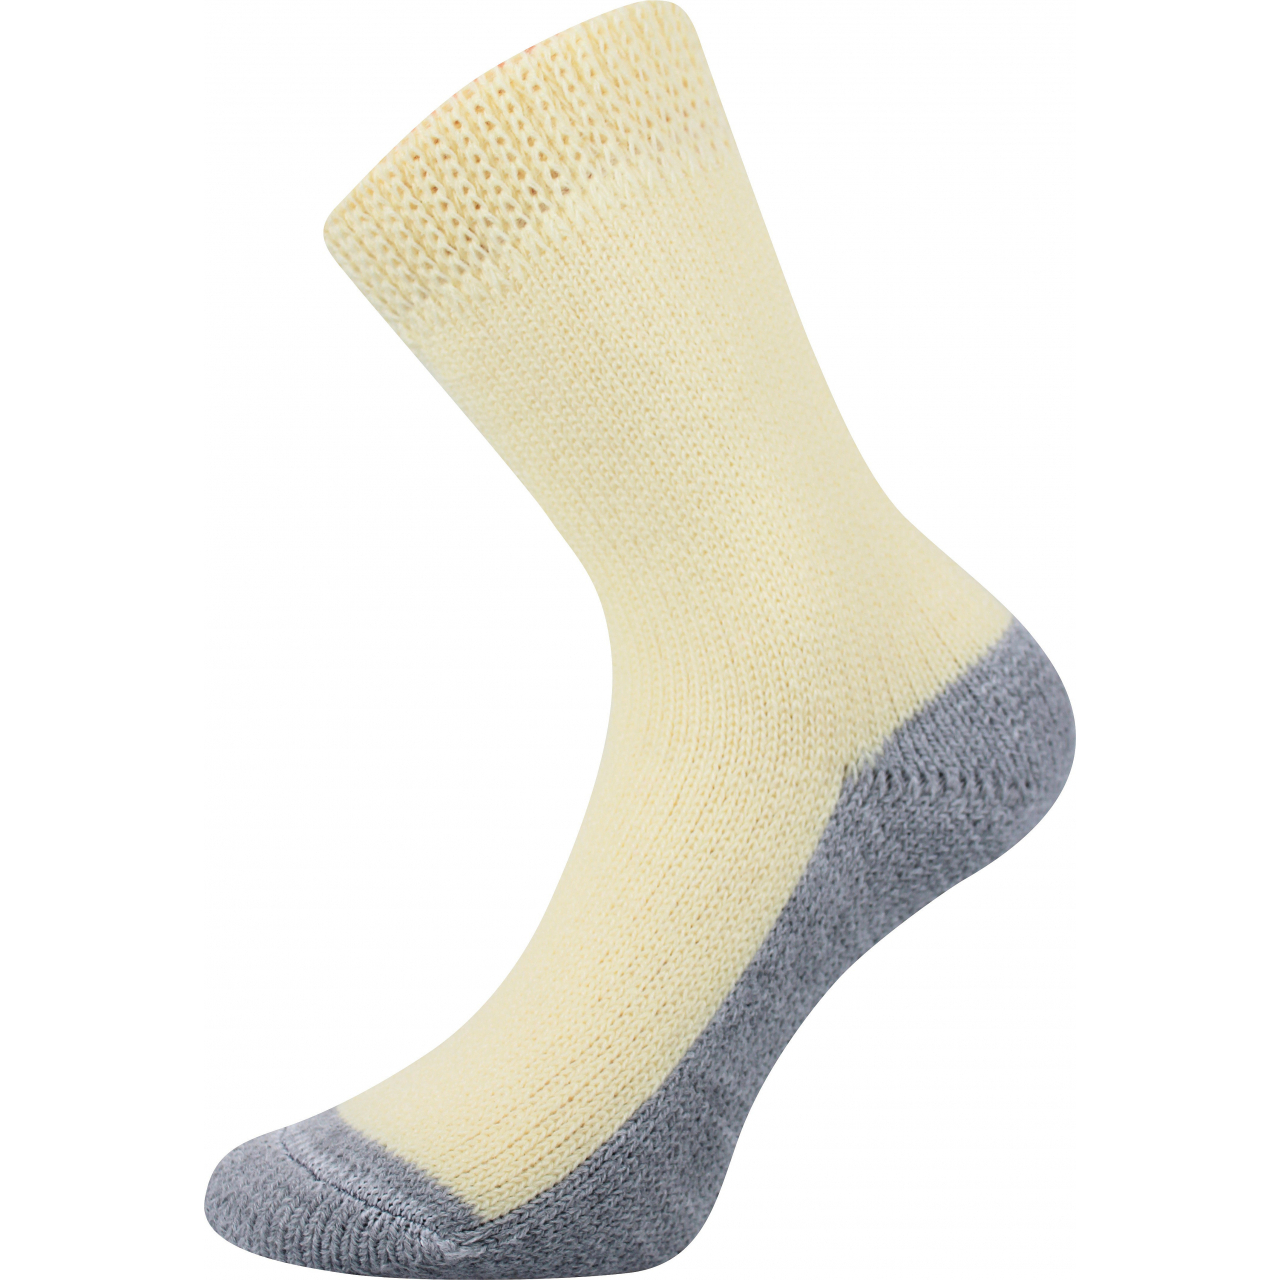 Ponožky unisex Boma Spací - žluté, 35-38